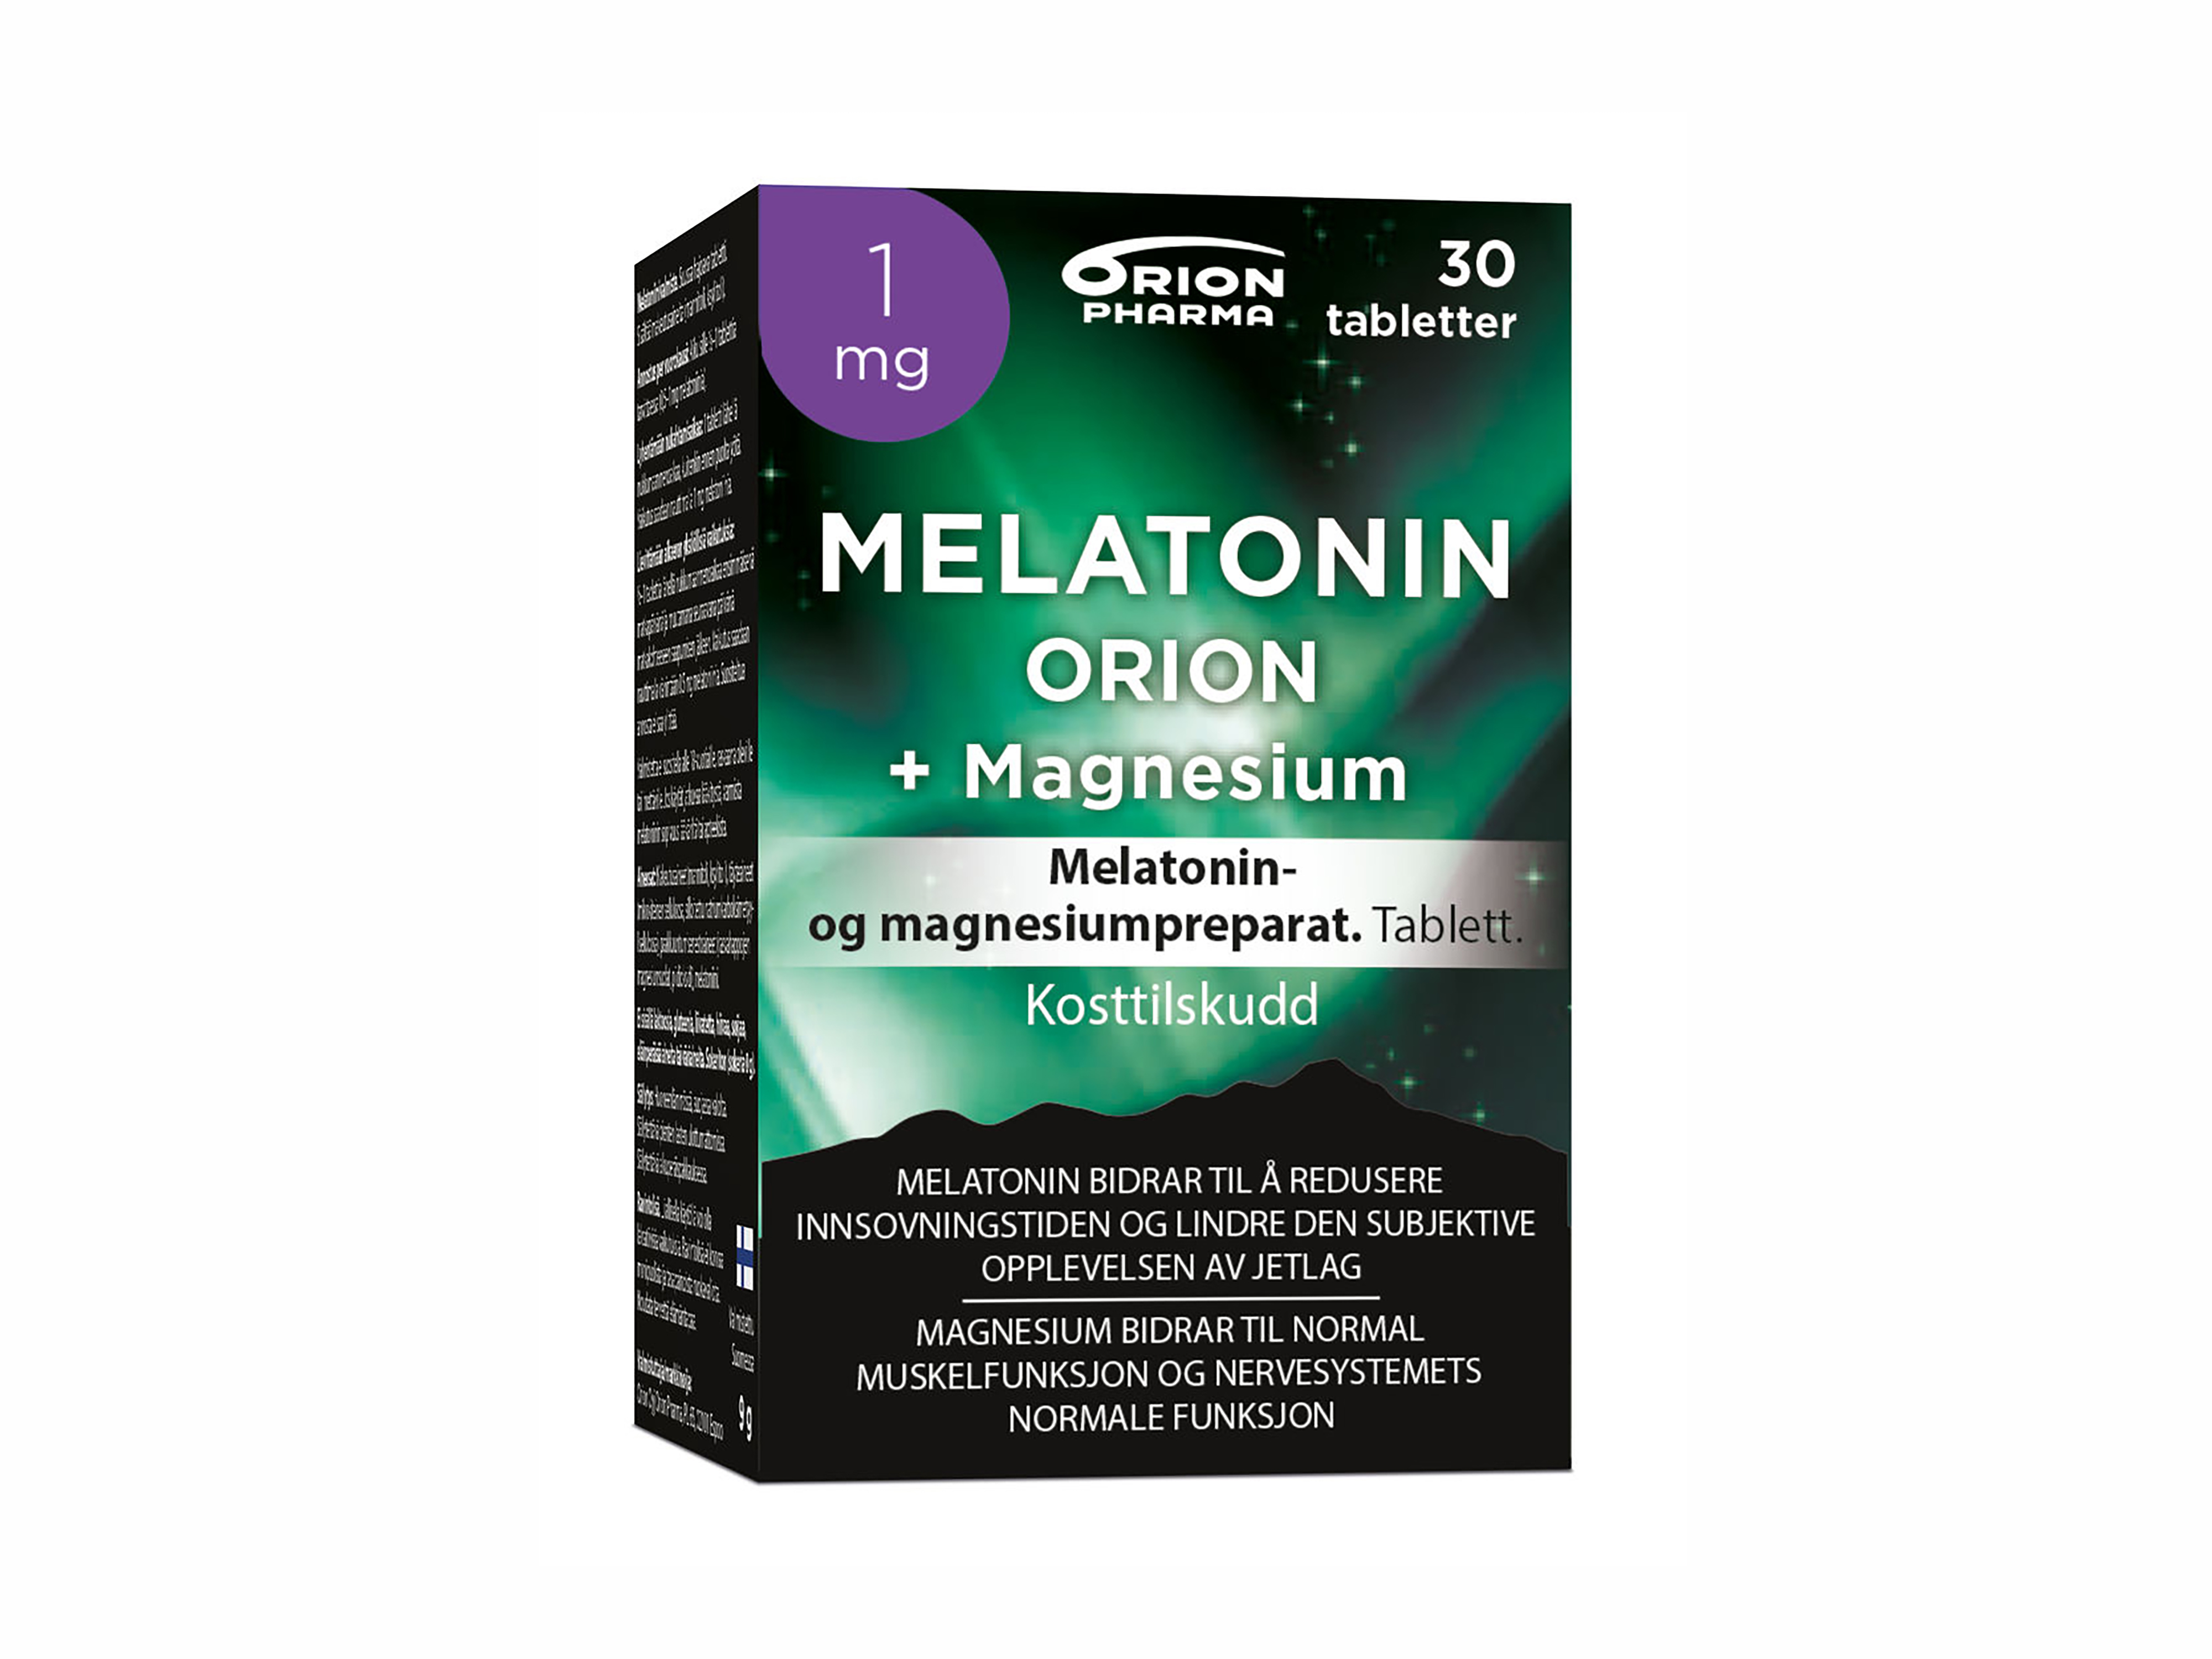 Melatonin Orion Tablett 1mg + Magnesium, 30 tabletter